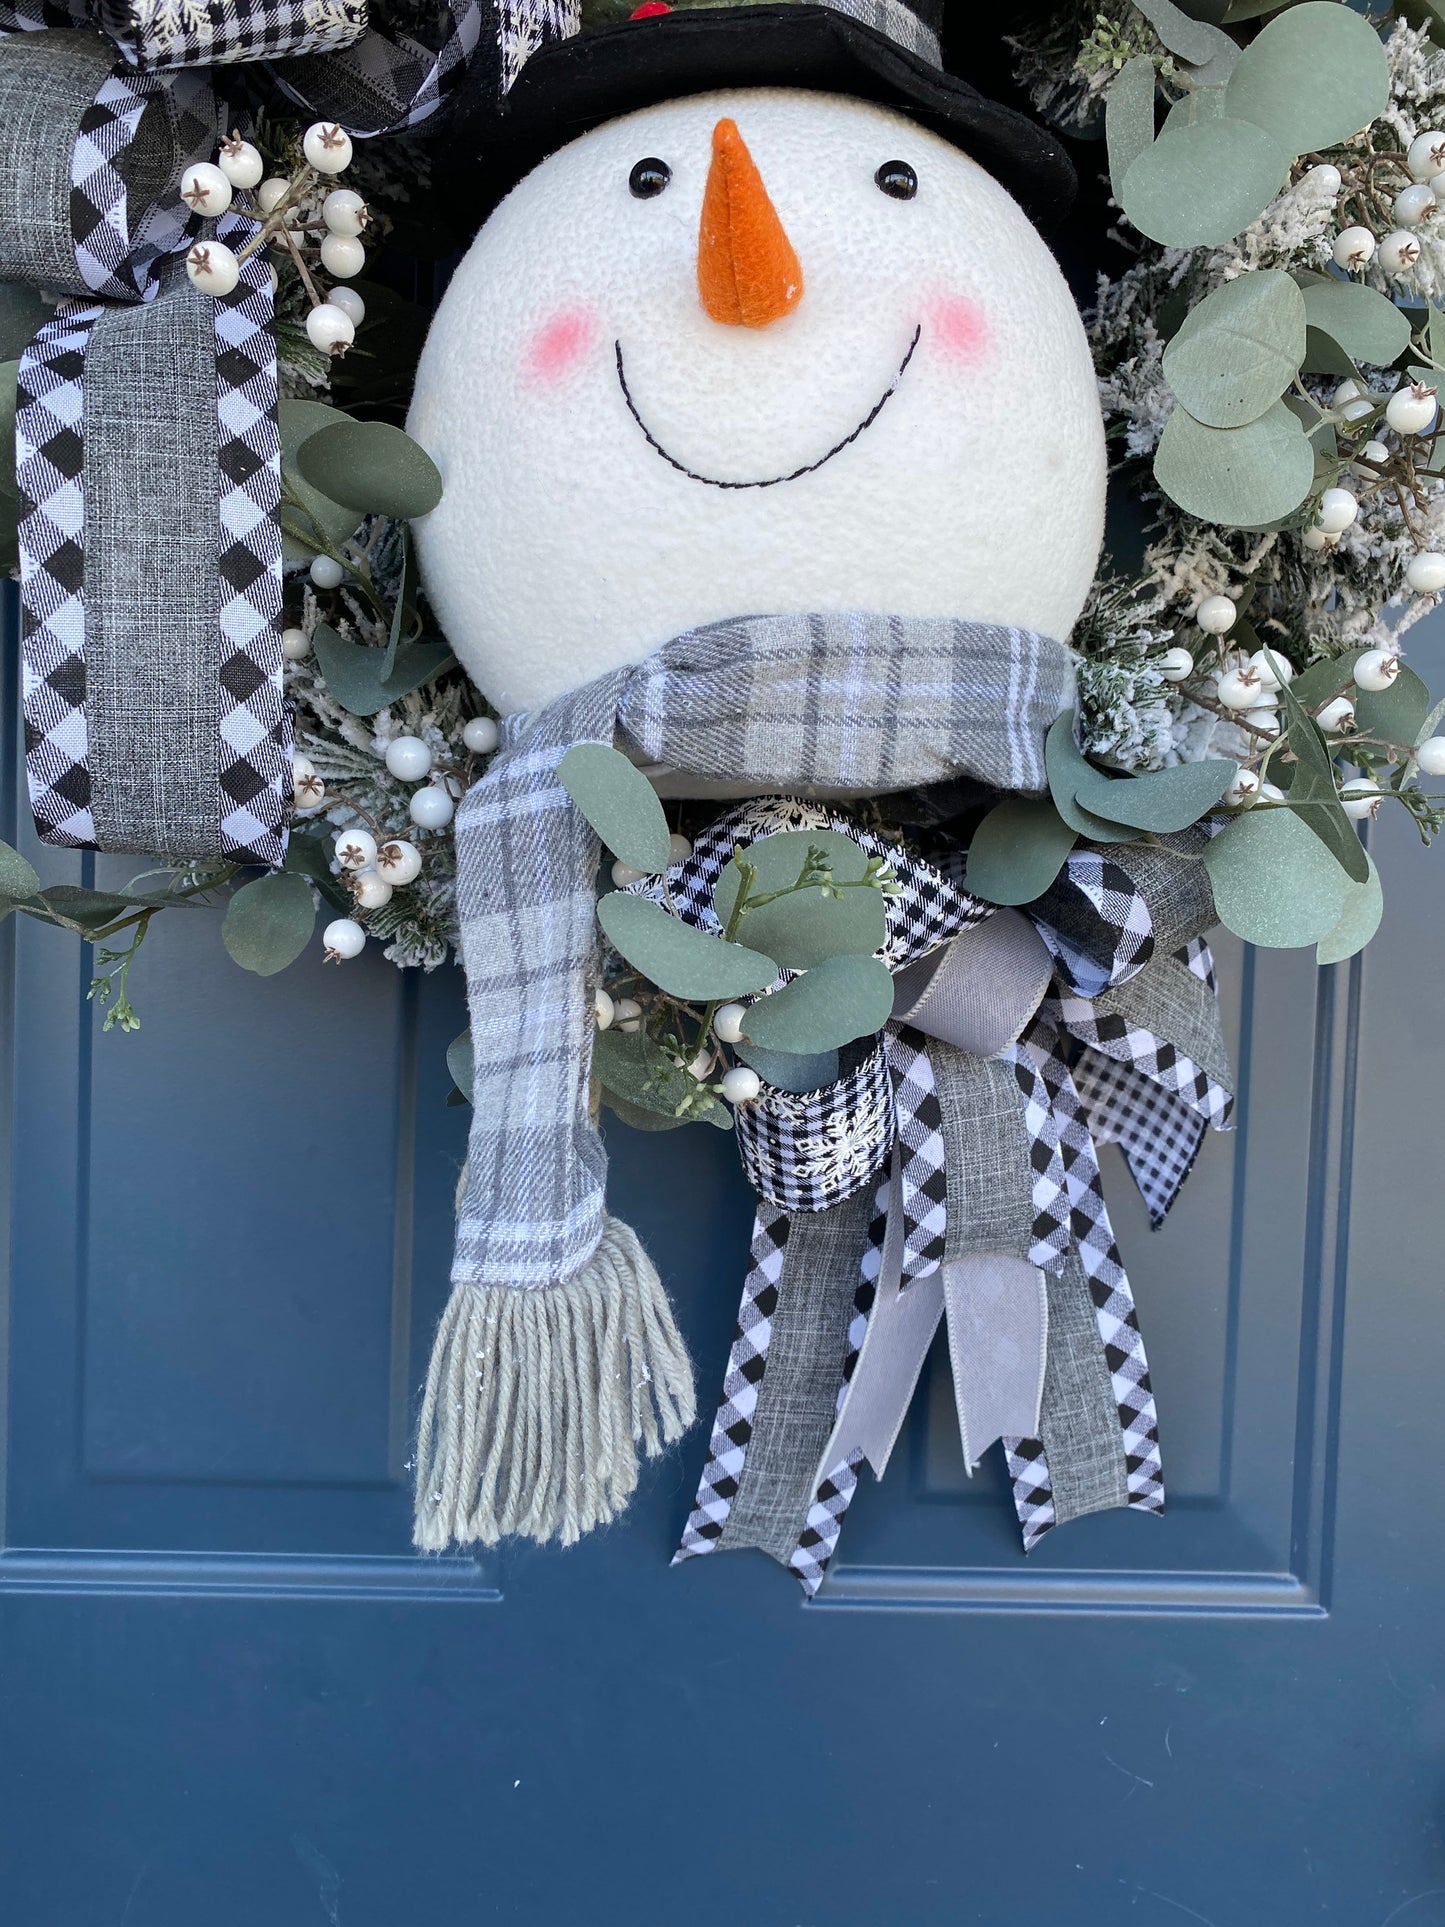 Snowman Winter Wreath for Front Door, XL Snowman Head Flocked wreath with Eucalyptus, Farmhouse Wreath for Interior, Snowy Decor